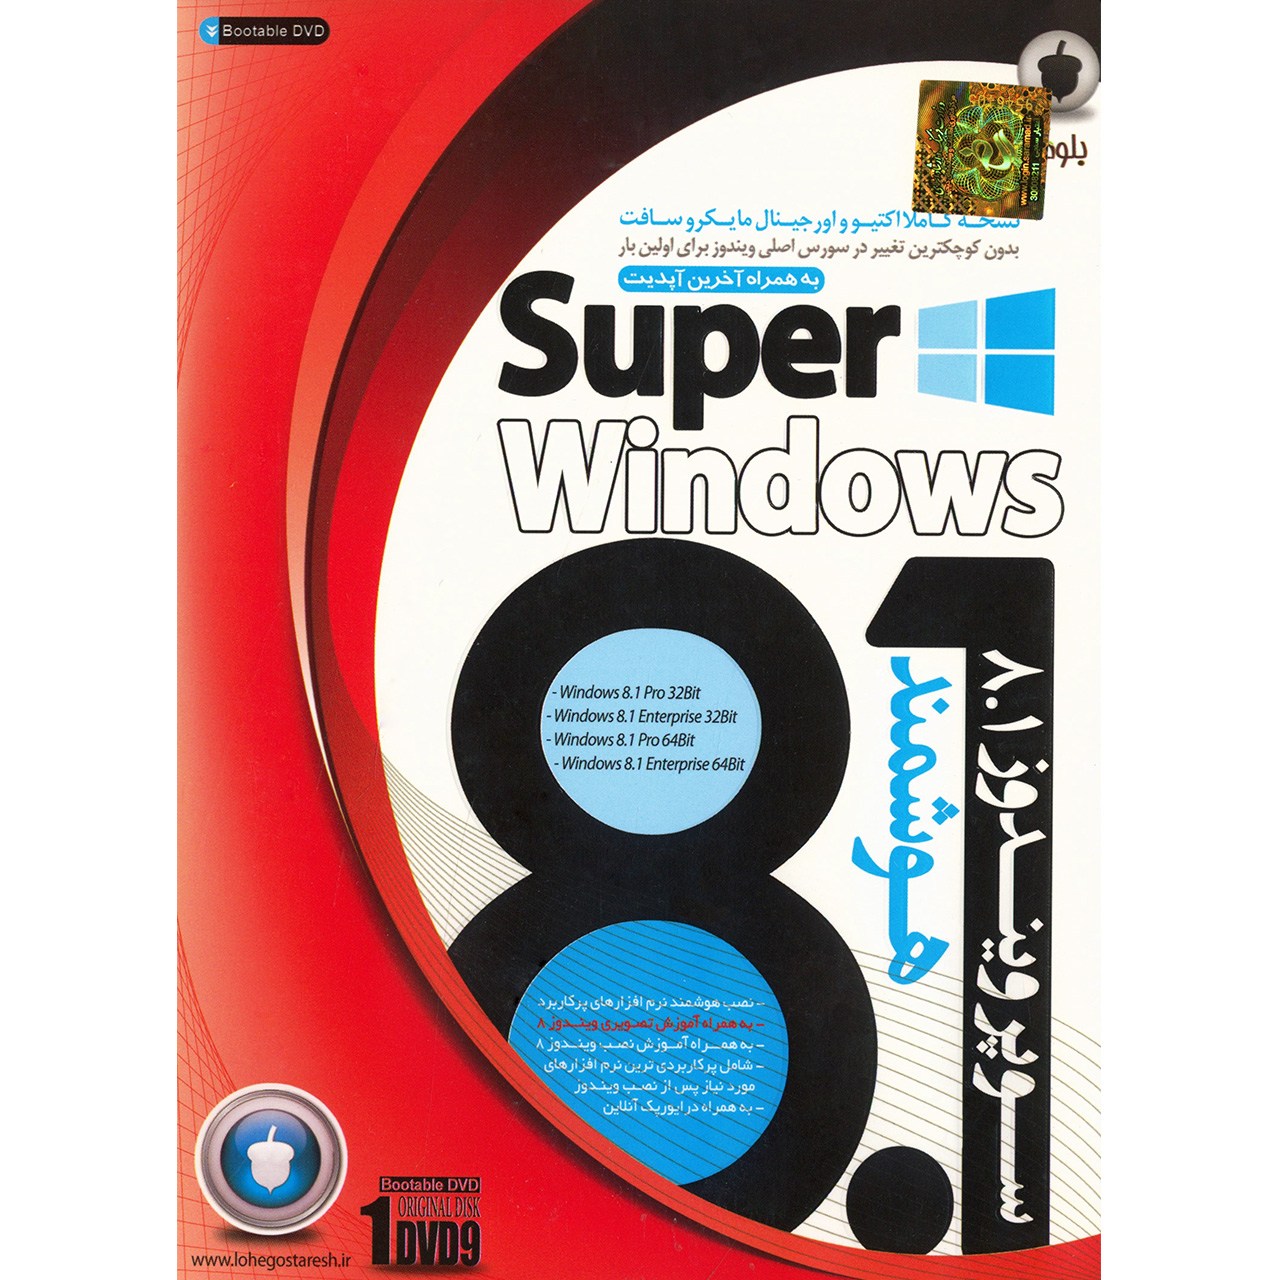 سیستم عامل سوپر ویندوز 8.1 نشر بلوط